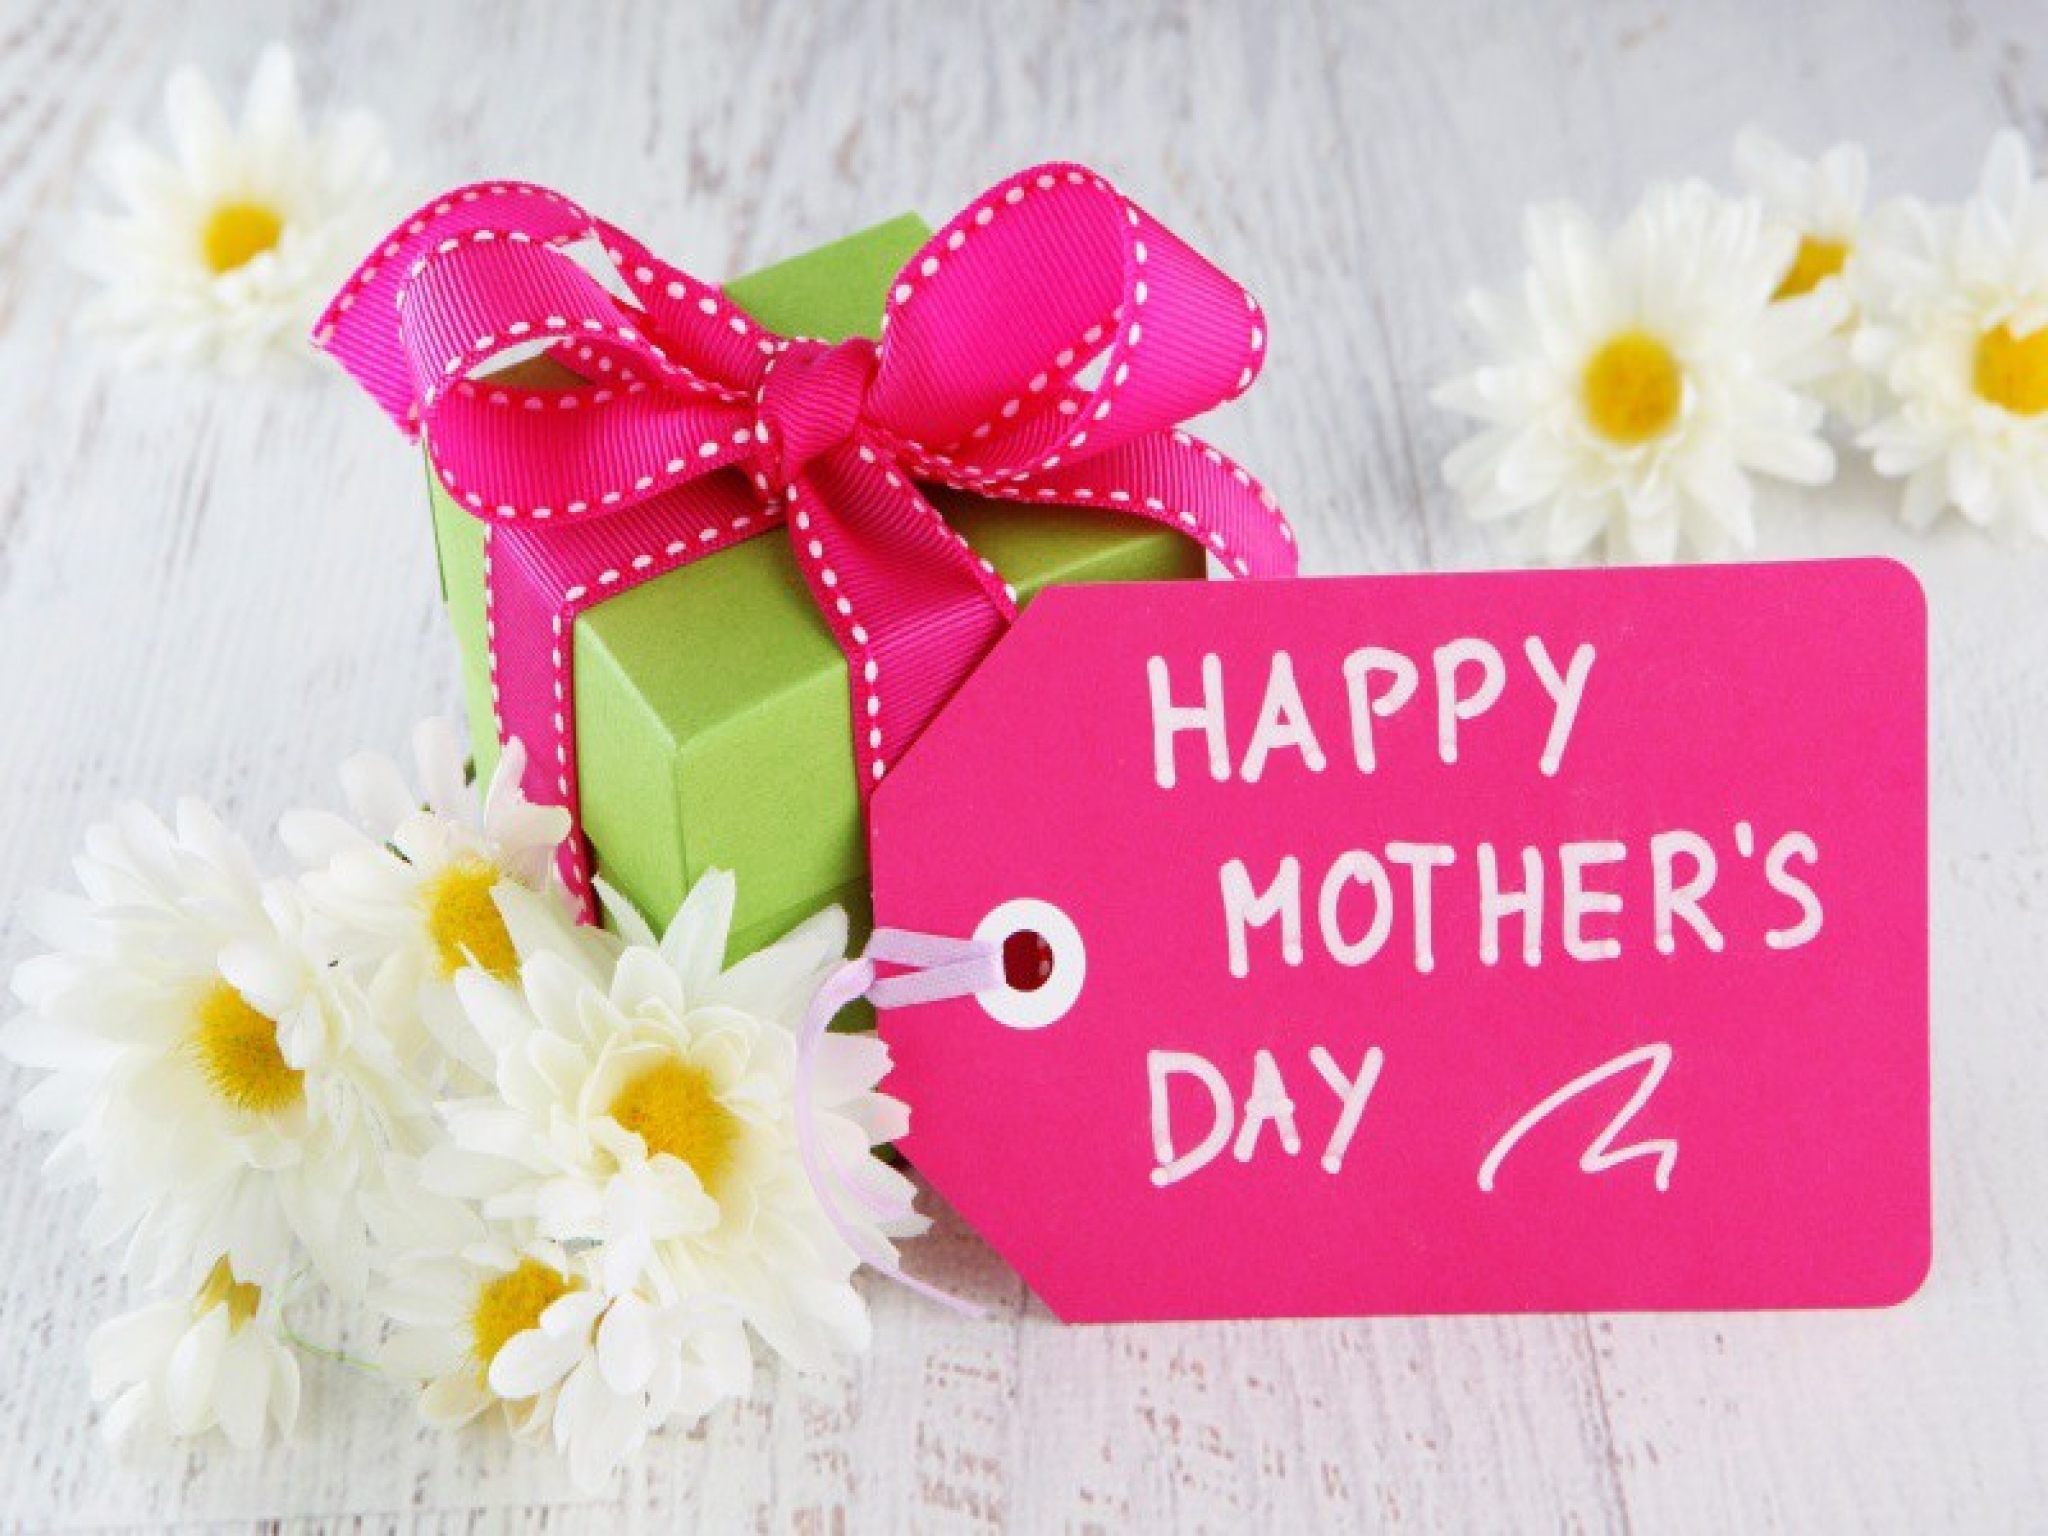 صور وكروت وبطاقات معايدة لعيد الأم - Happy Mother's Day 2020 204